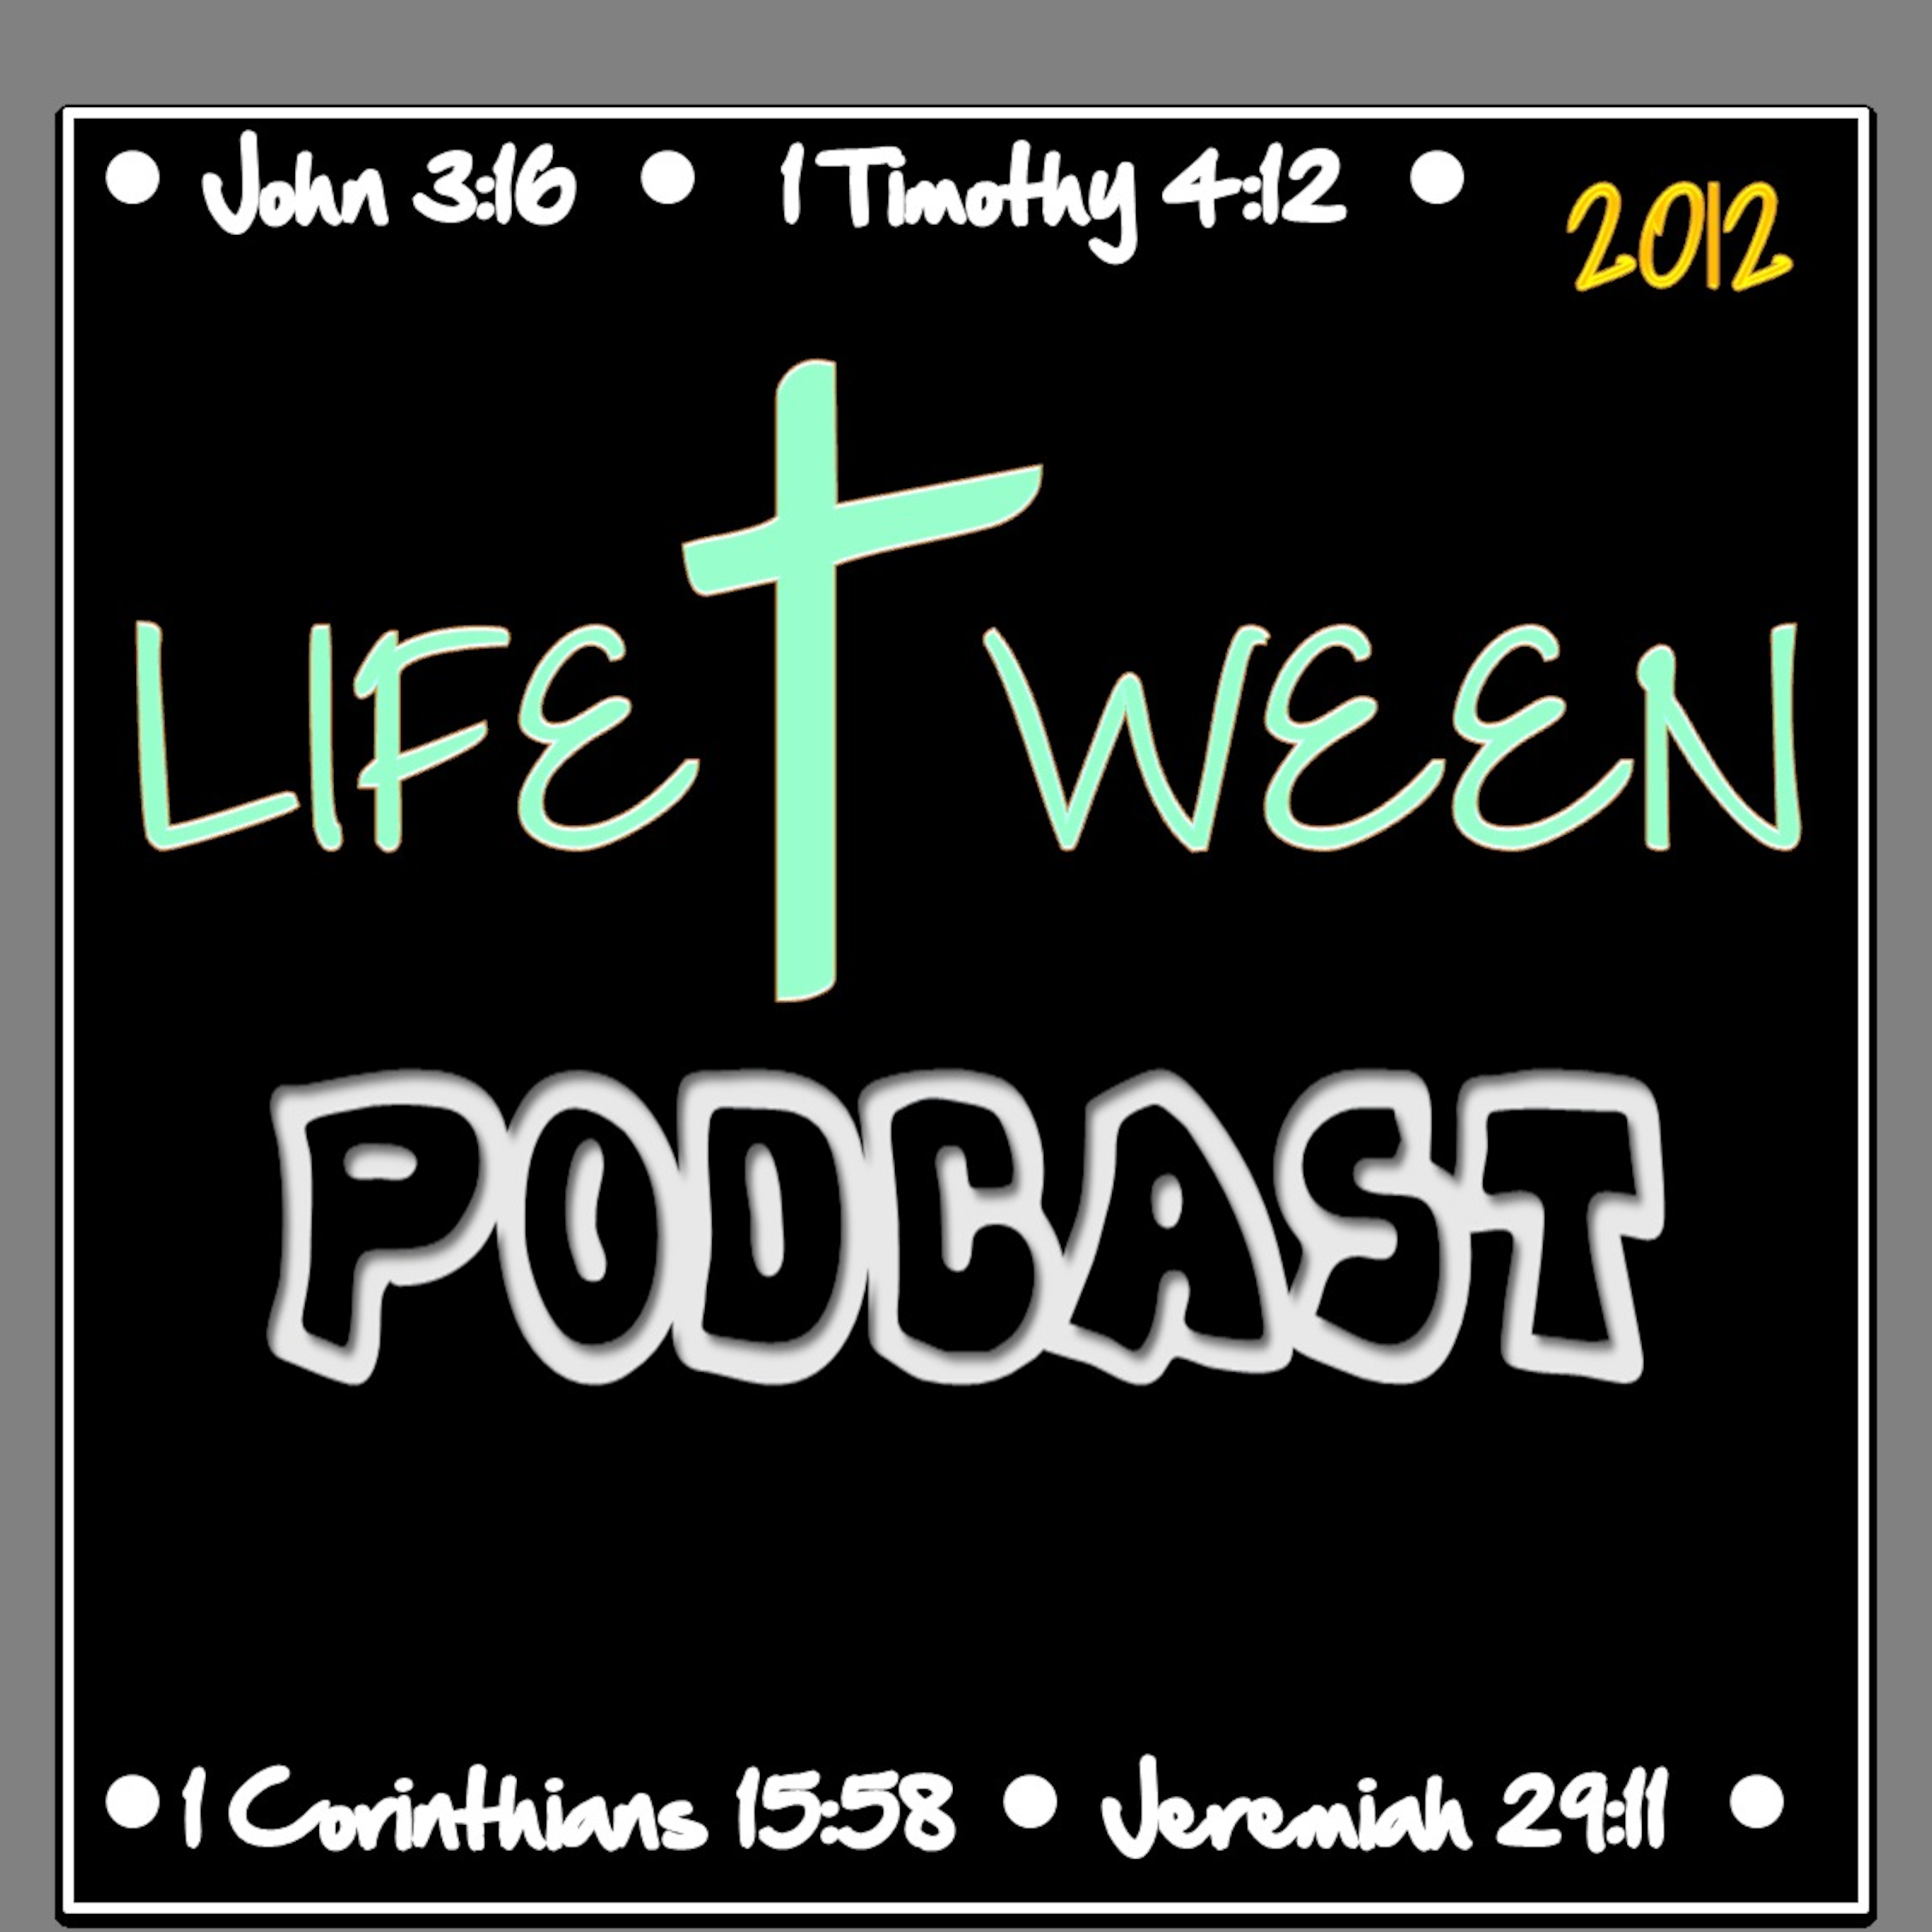 LifeTween Podcasts